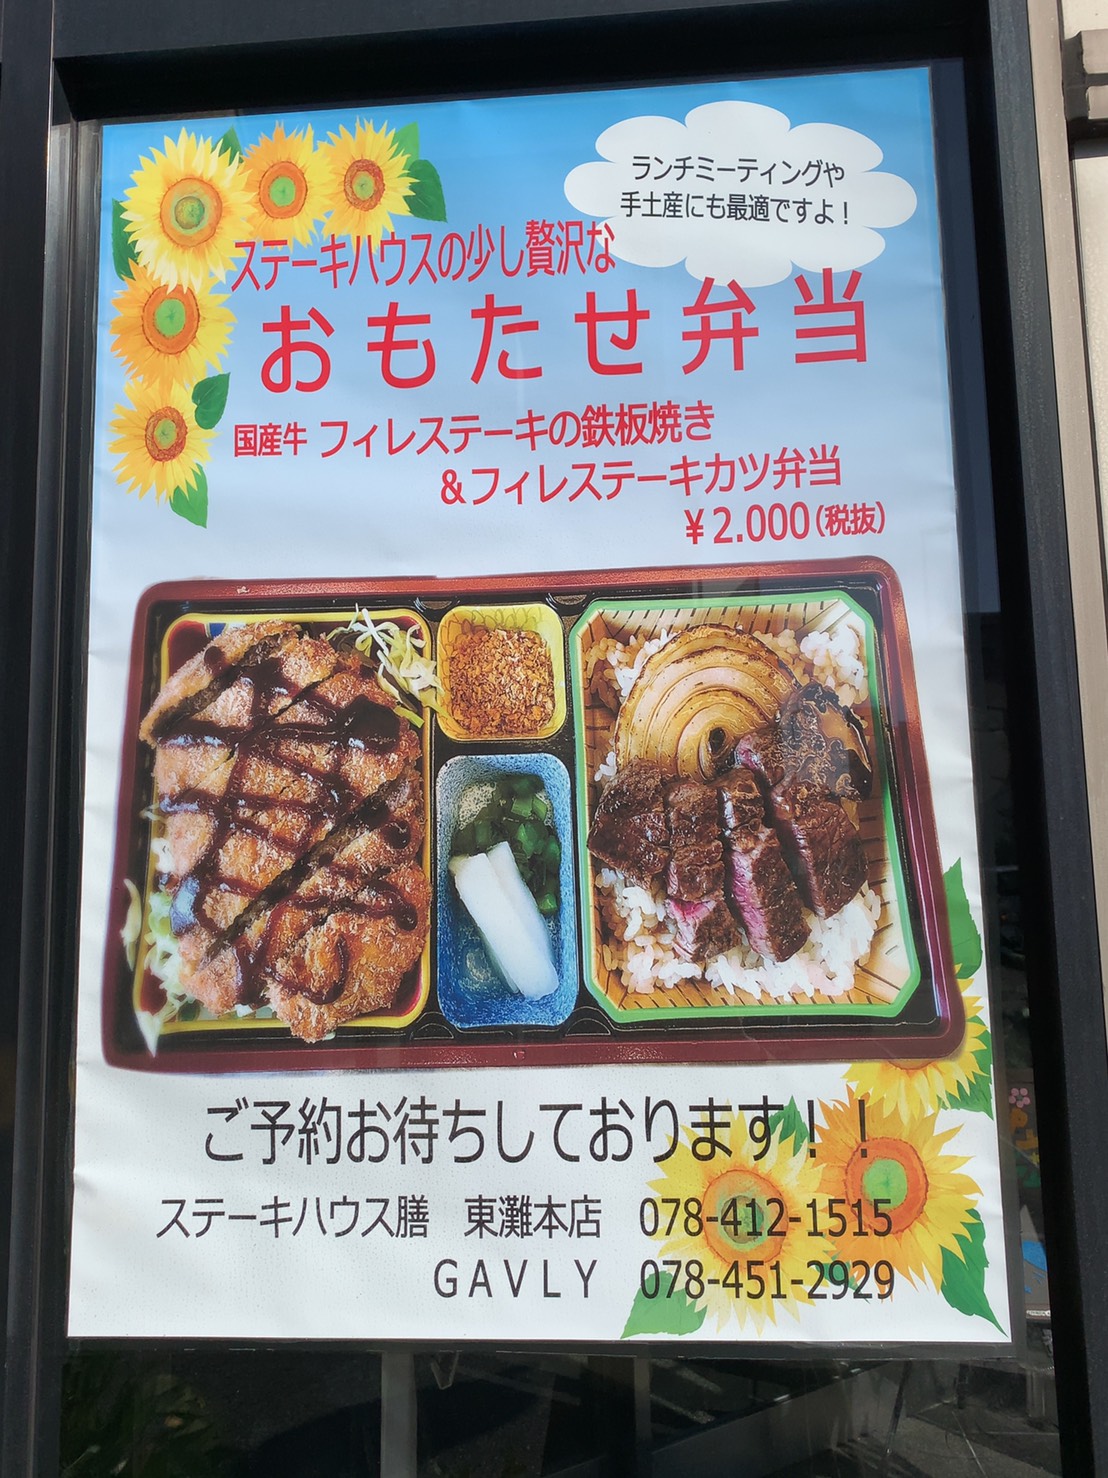 神戸市東灘区 ステーキハウス善のおもたせ弁当が凄いらしい こんな差し入れされたら一生覚えていると思う 号外net 神戸市灘区 東灘区